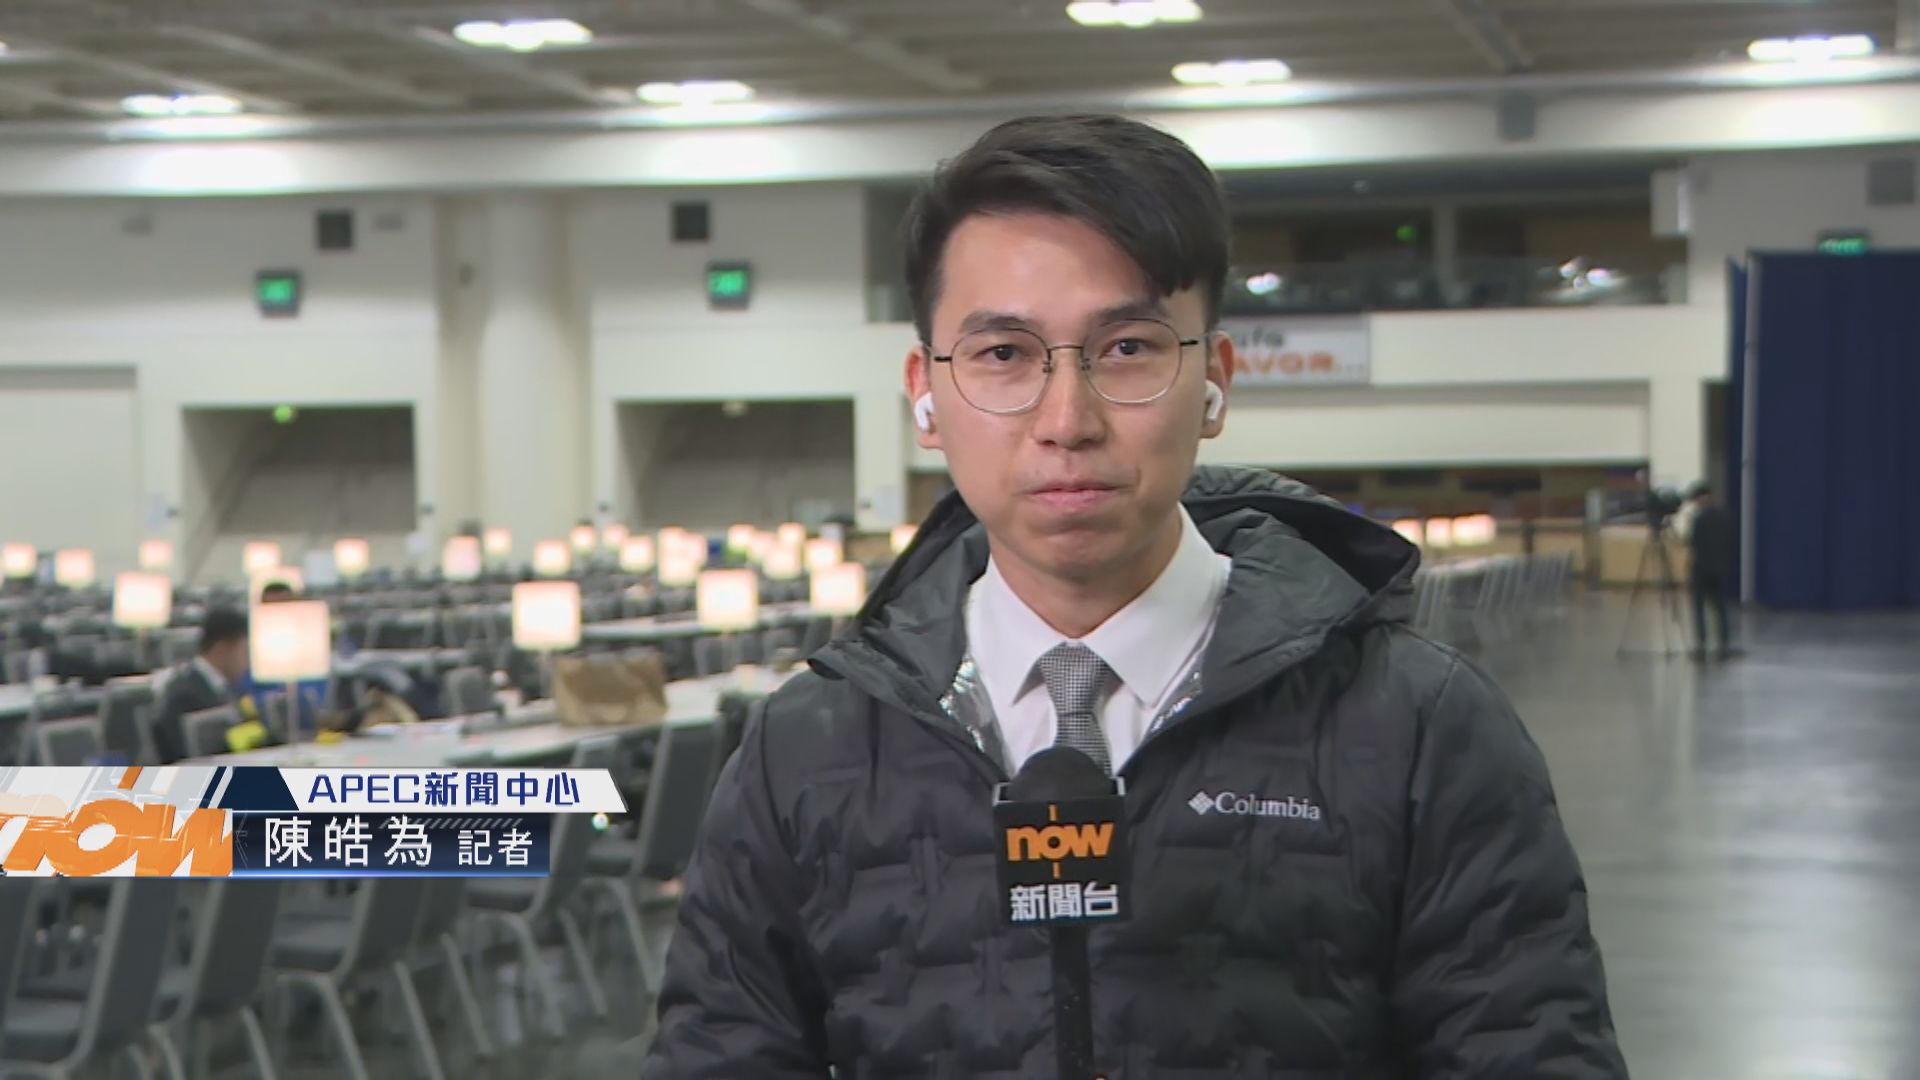 【記者三藩市報道】APEC會場保安嚴密 記者談論取消免費膳食